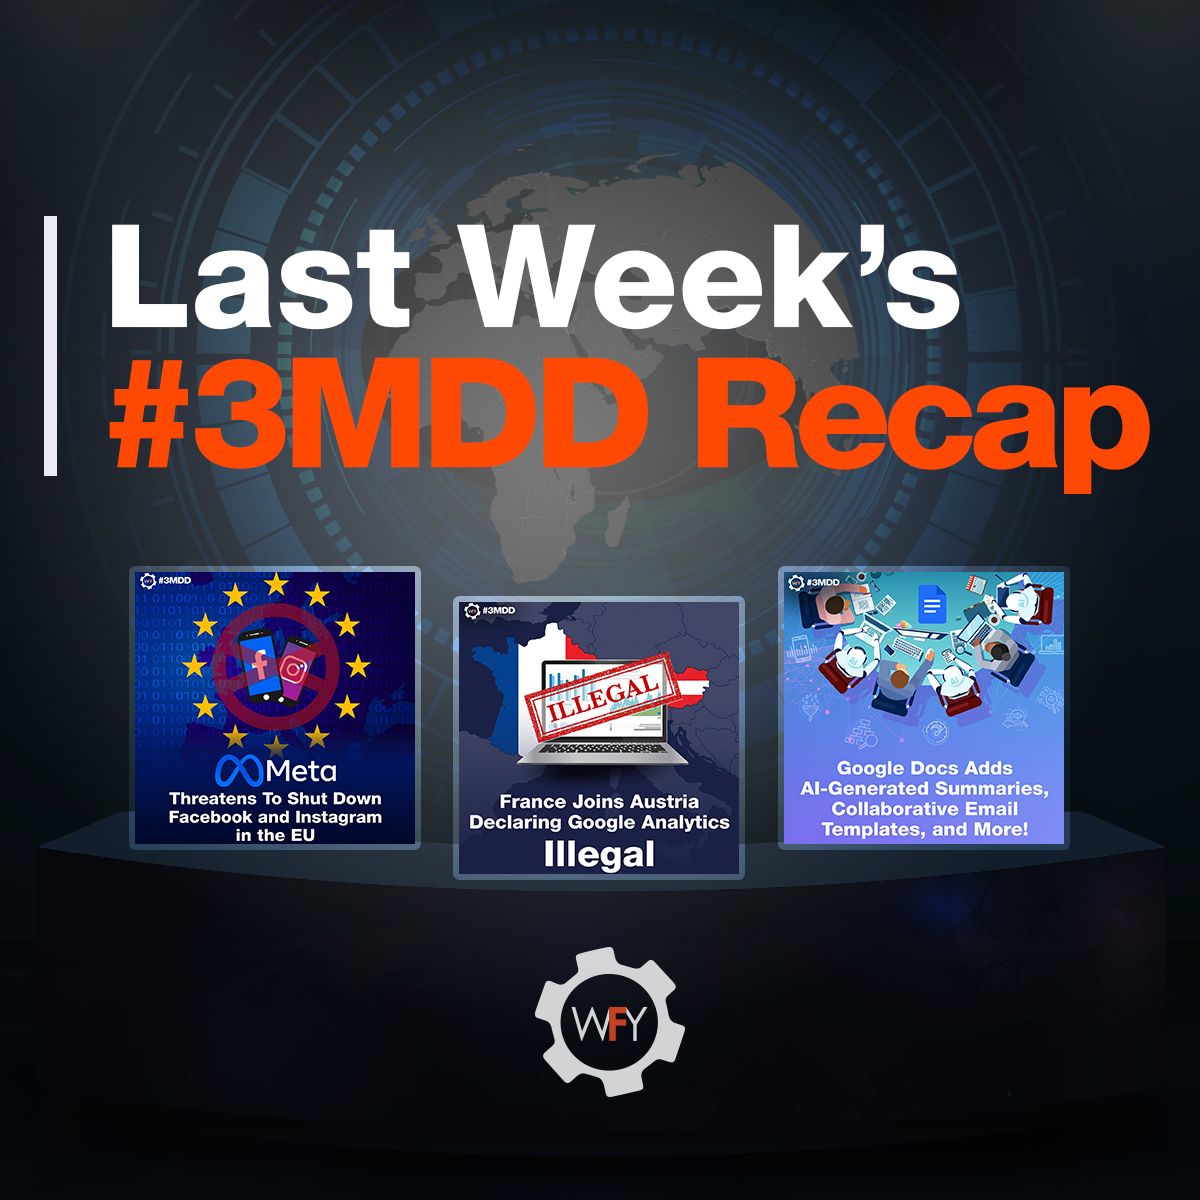 Carrousel: Last Week's #3MDD Recap